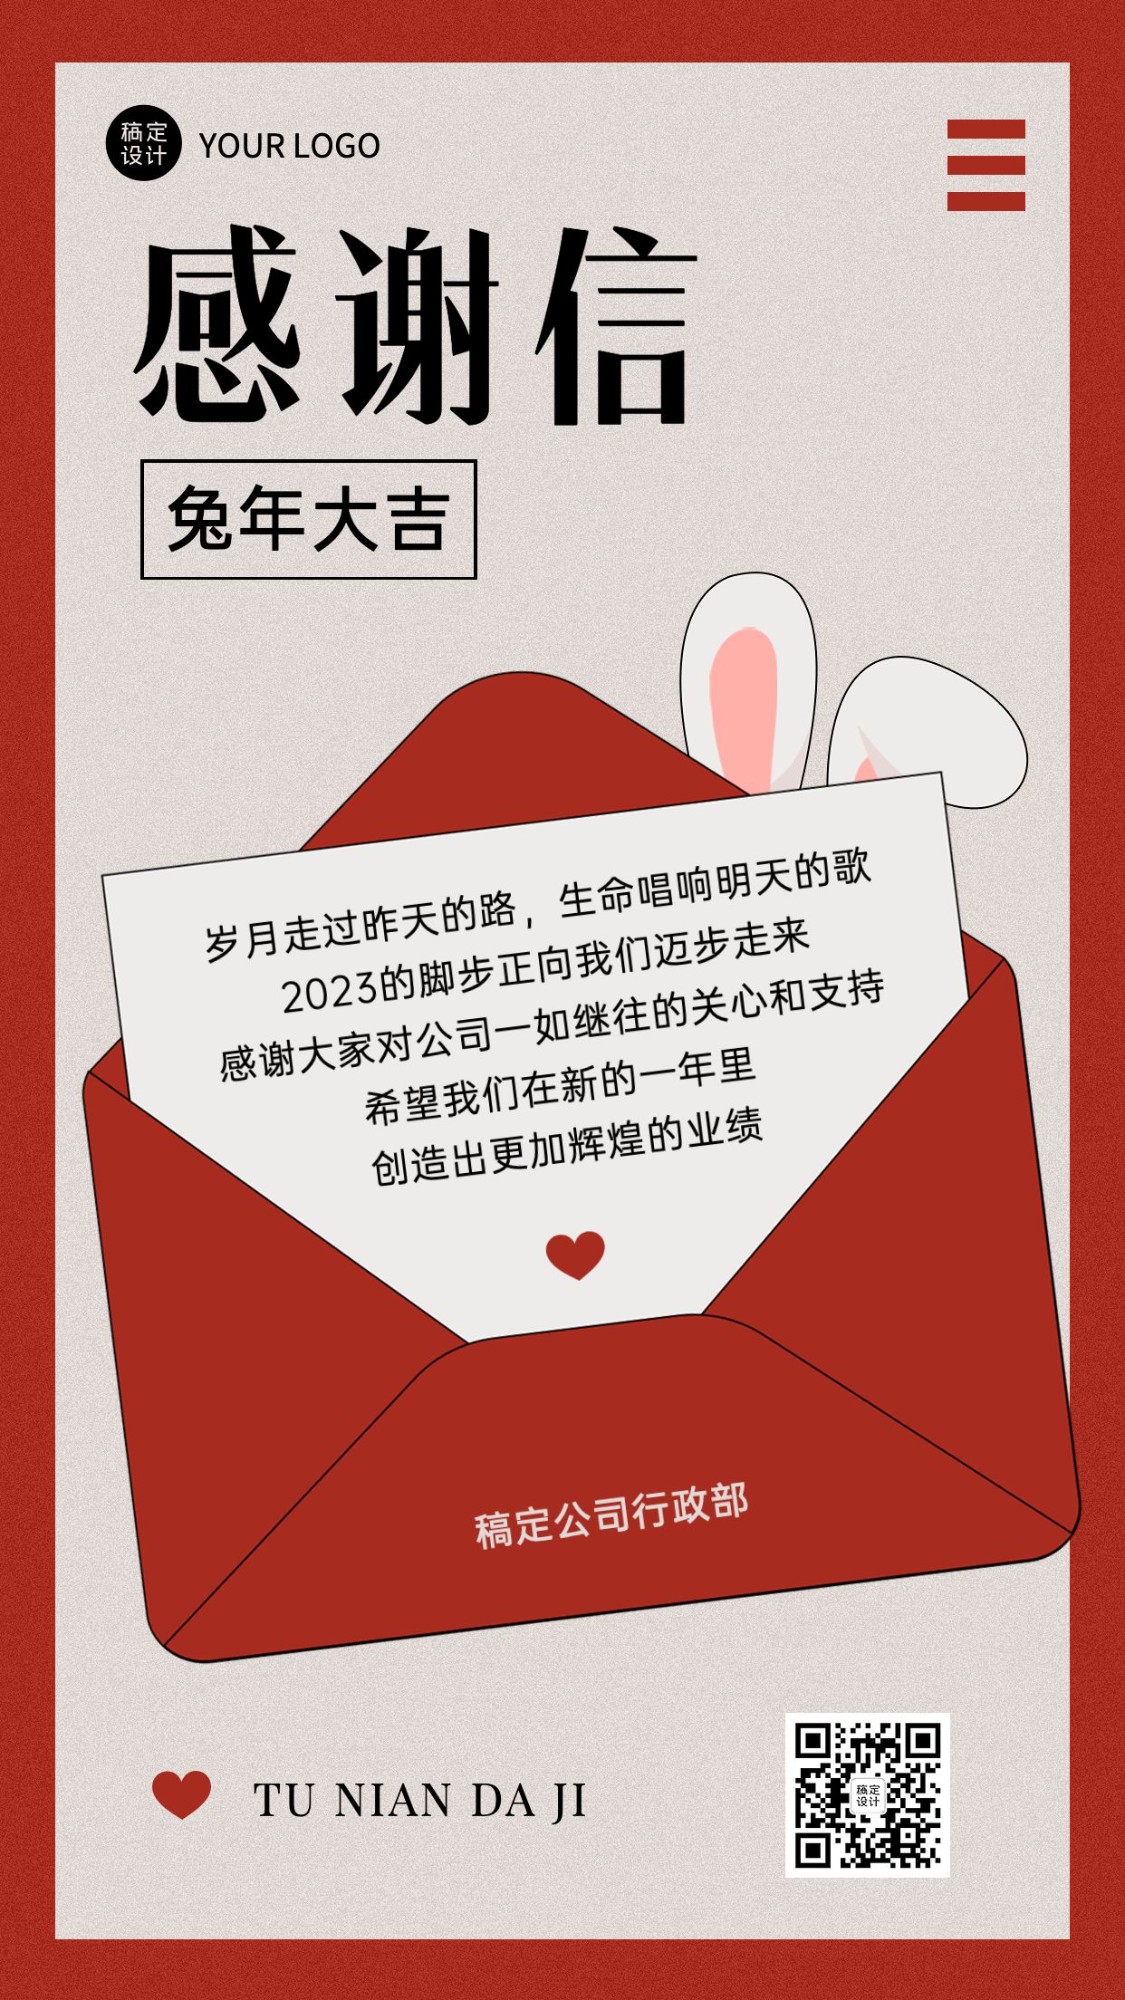 熊猫头红围巾举手机新年表情包 扫这里谢谢 要红包表情包 微信二维码 支付宝二维码 要红包表情包图片gif动图 - 求表情网,斗图从此不求人!